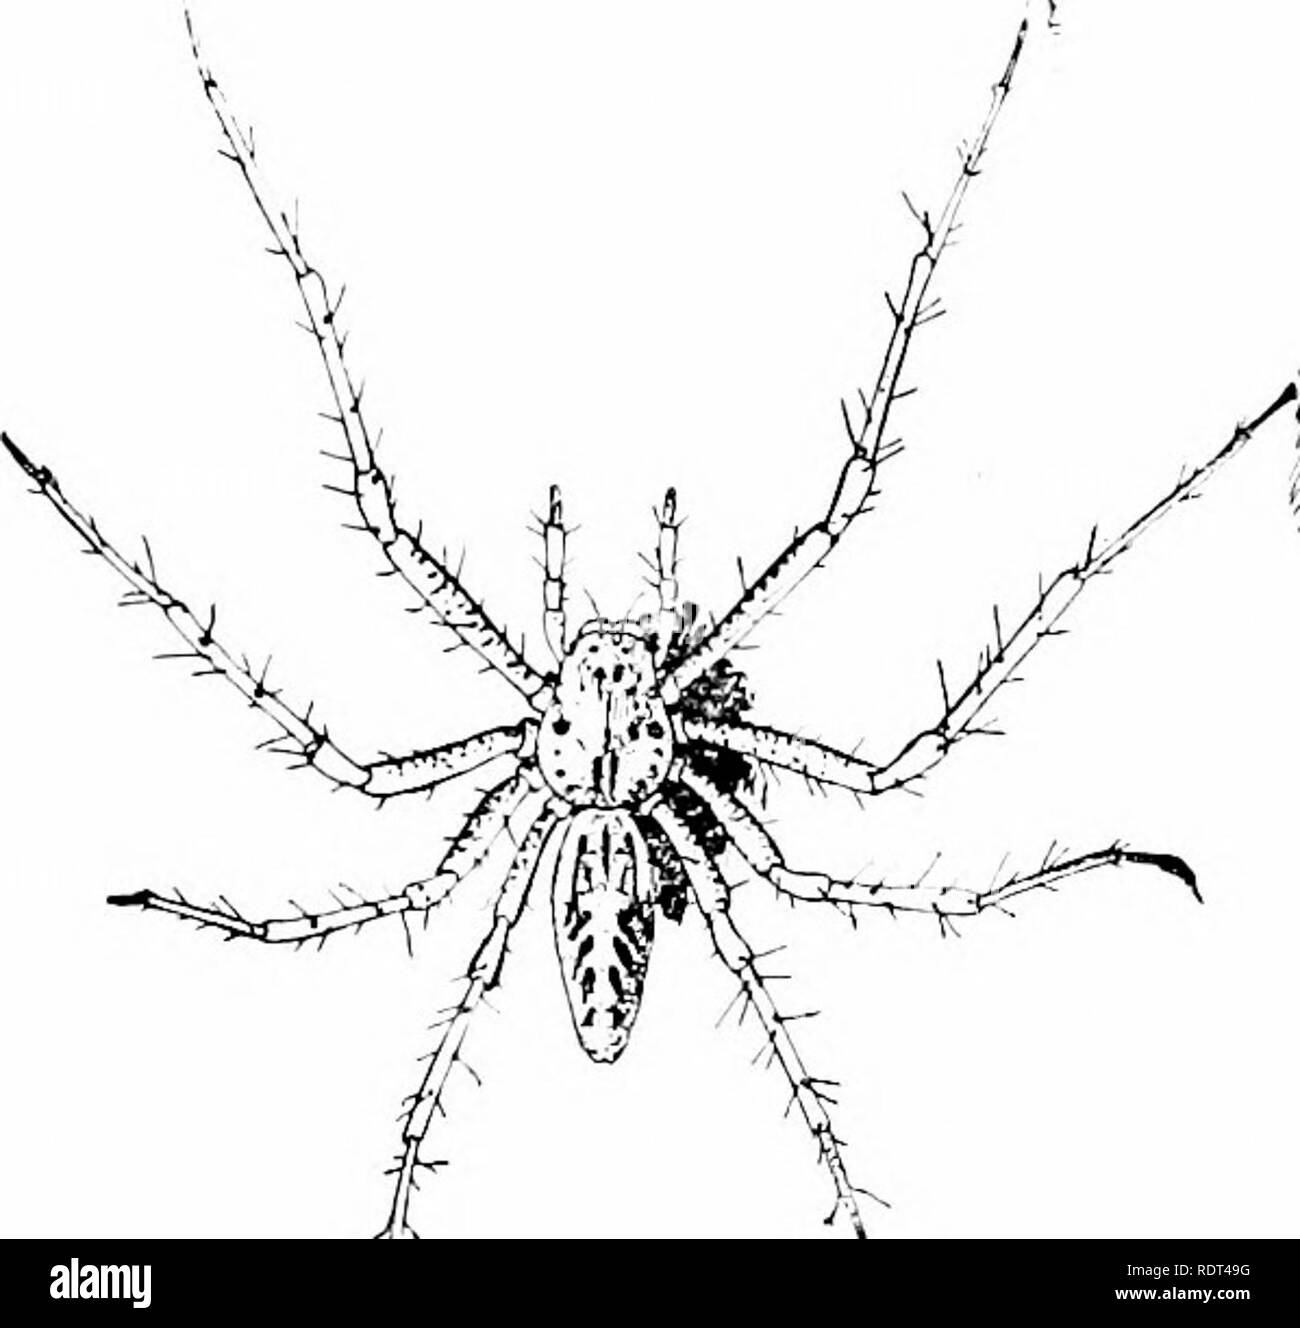 . Ersten Unterricht in der Zoologie. Zoologie. 194 ersten Lektionen in der Zoologie Verfolgern, unter Steinen lauern, der Grimmige-eyed httle Schwarz und Rot Fellows versteckt sich auf der Rinde von Bäumen, und die daintil) farbige Krabben - wie ruhig liegen in Blume - Tassen, gehören zu den nicht-web-weberei Gruppe. Wir werden. Her. 152.- eine Web-weben Spider. (Natürliche Größe; vom Leben.) zuerst die der zweiten Gruppe, der wir die Jagd - Spinnen nennen können. Unter Steinen oder Lauern in der Hälfte - Verheimlichung anderswo im Ma) "readil werden)' gefunden bestimmte schwärzlich, ziemlich haarig, Spinnen, stärkste Bevölkerungszuwachs) - Groß (Abb. 153). Th Stockfoto